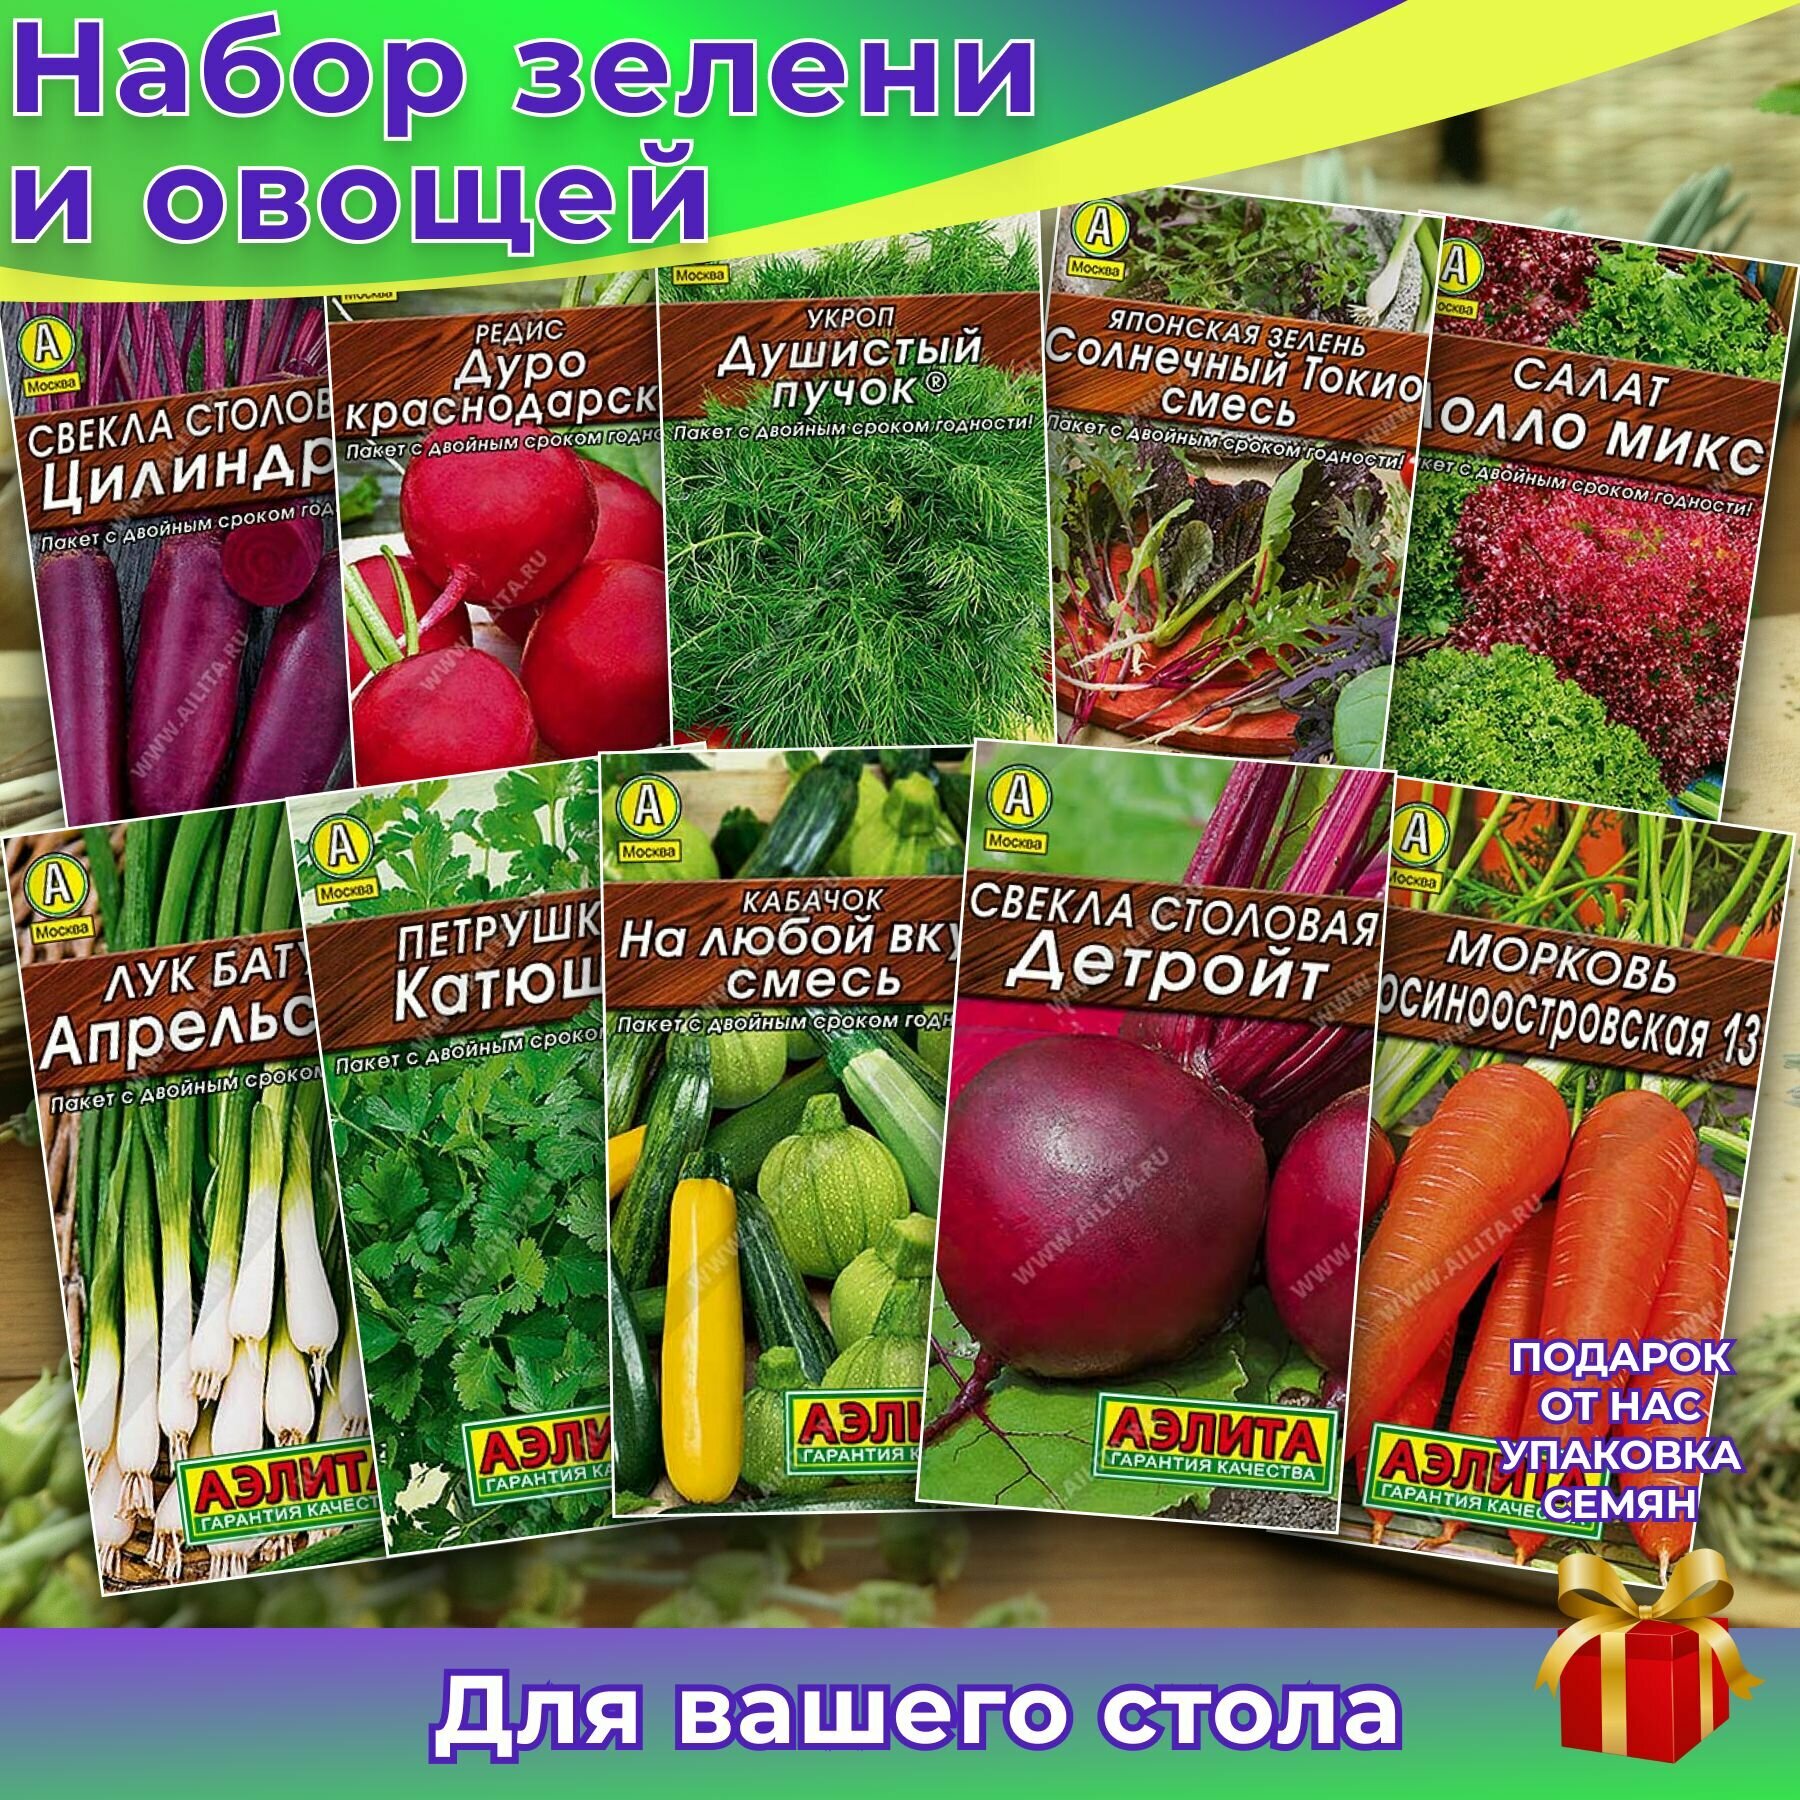 Набор семян "Зелень и овощи для салата" петрушка, укроп, лук, салат, морковь, свекла, кабачок